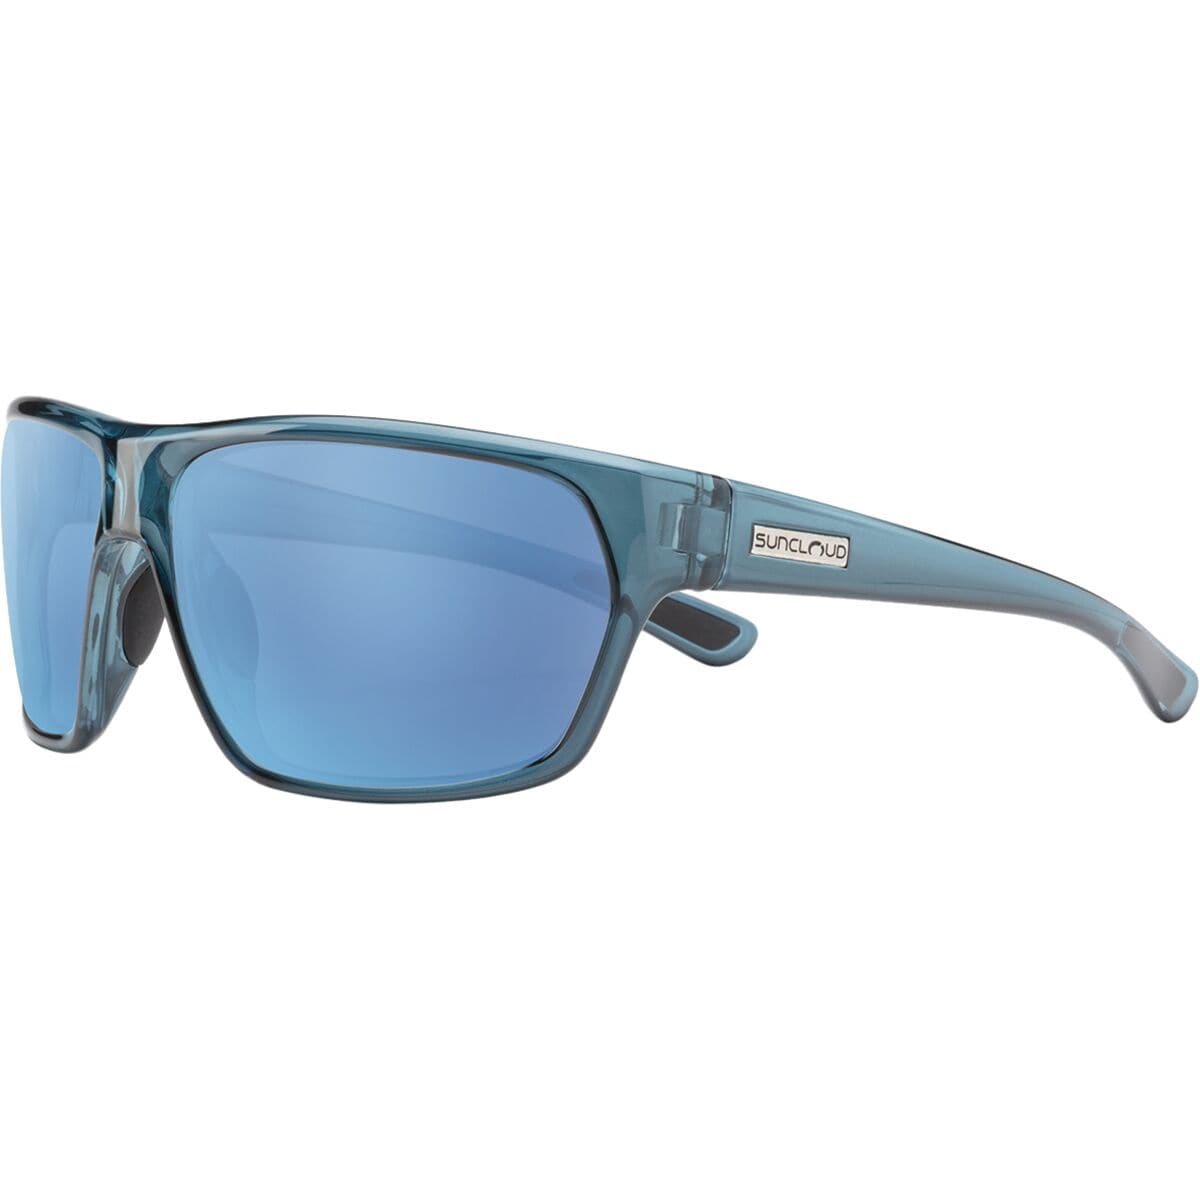 Поляризованные солнцезащитные очки boone Suncloud Polarized Optics, цвет crystal marine/polar aqua mirror